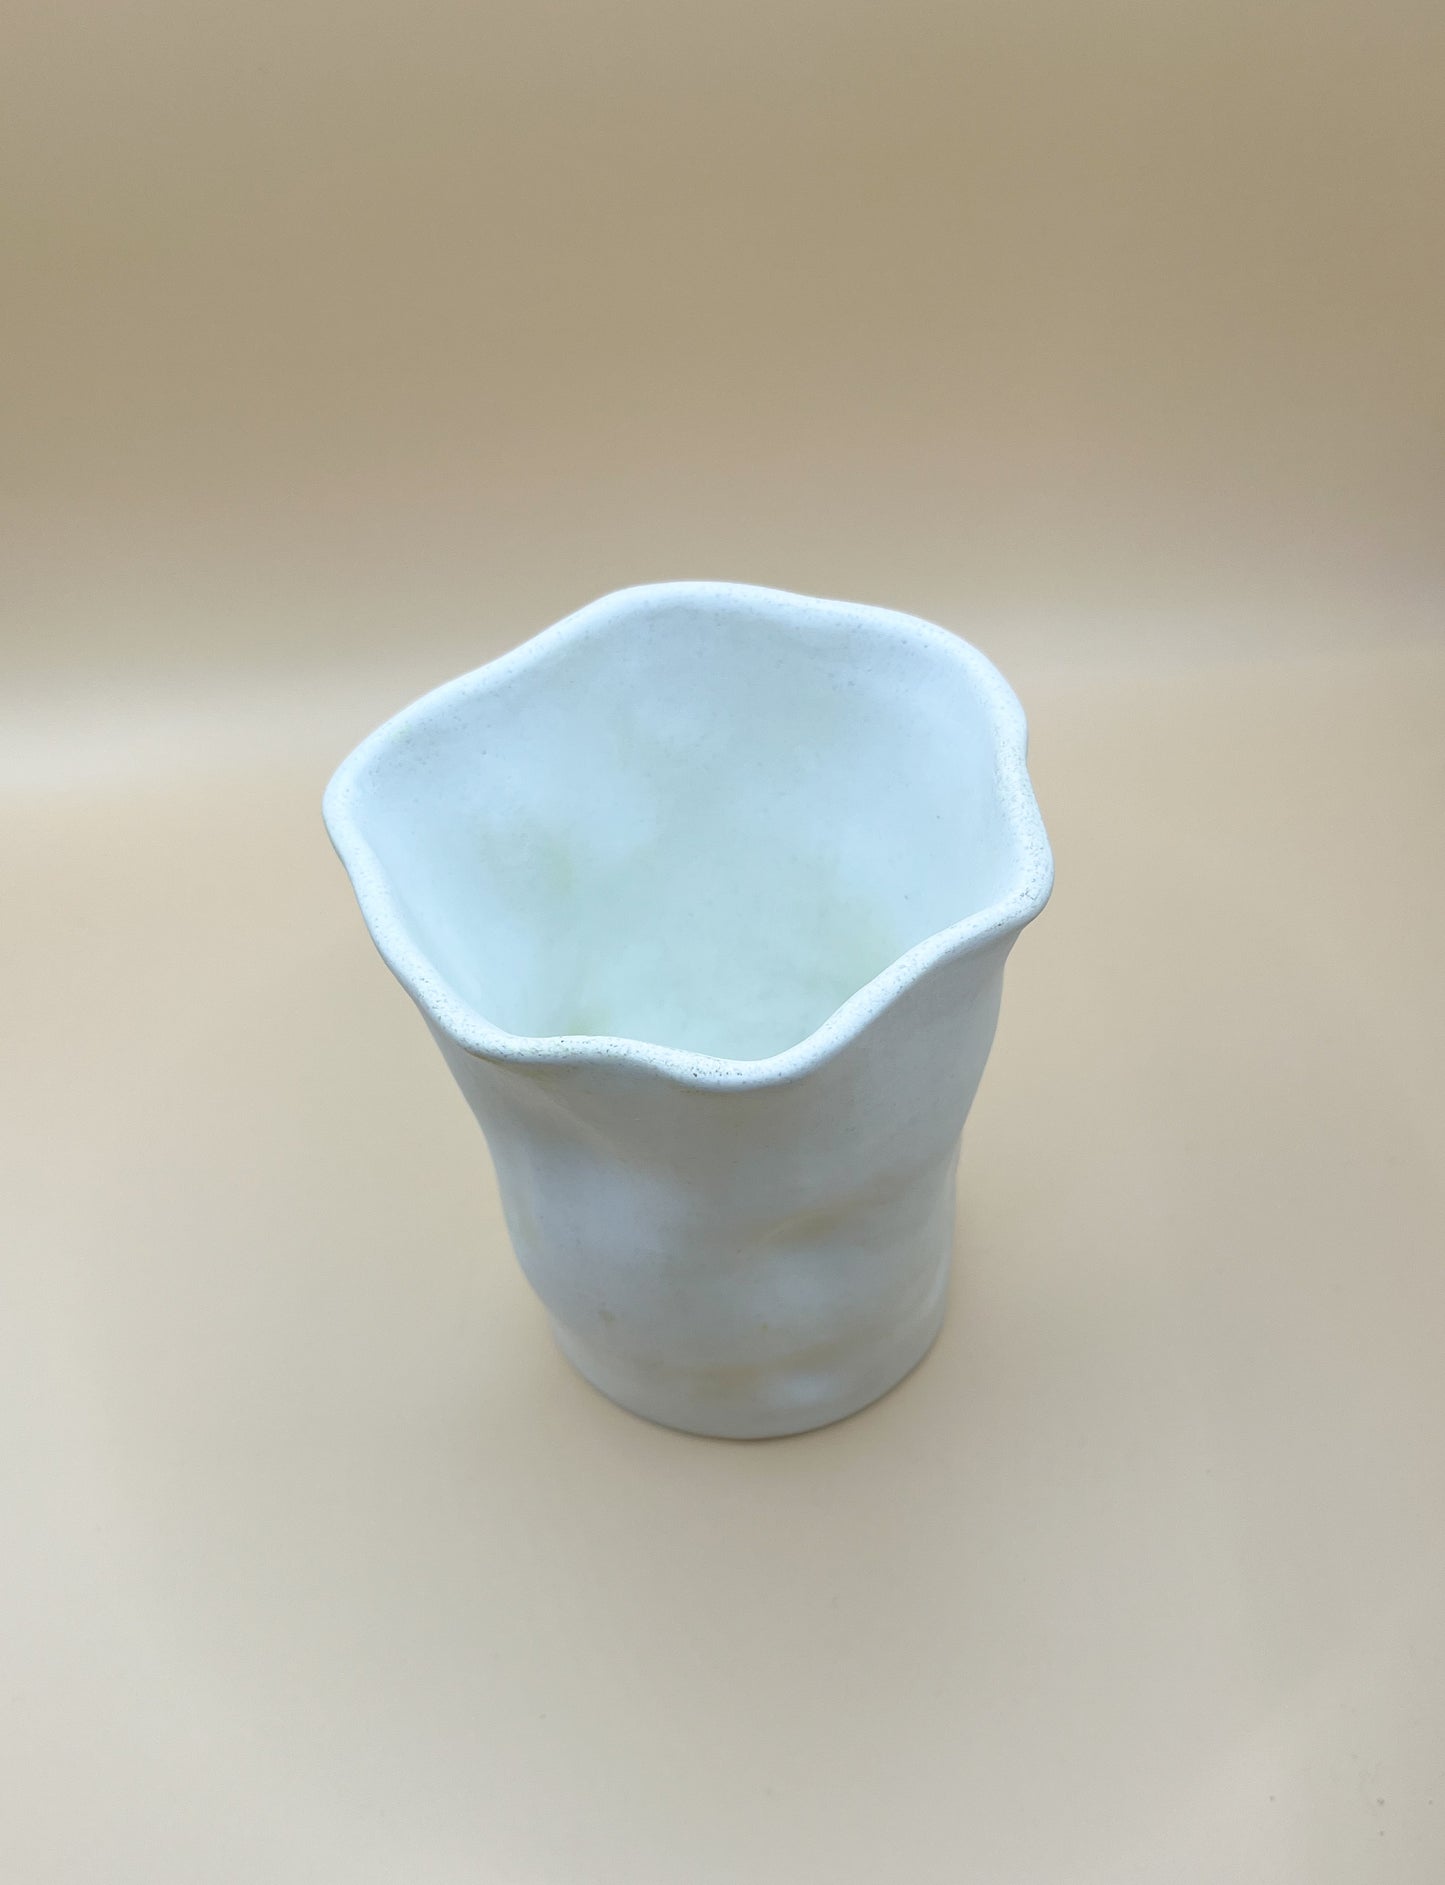 Crumpled glass ceramic looking vase